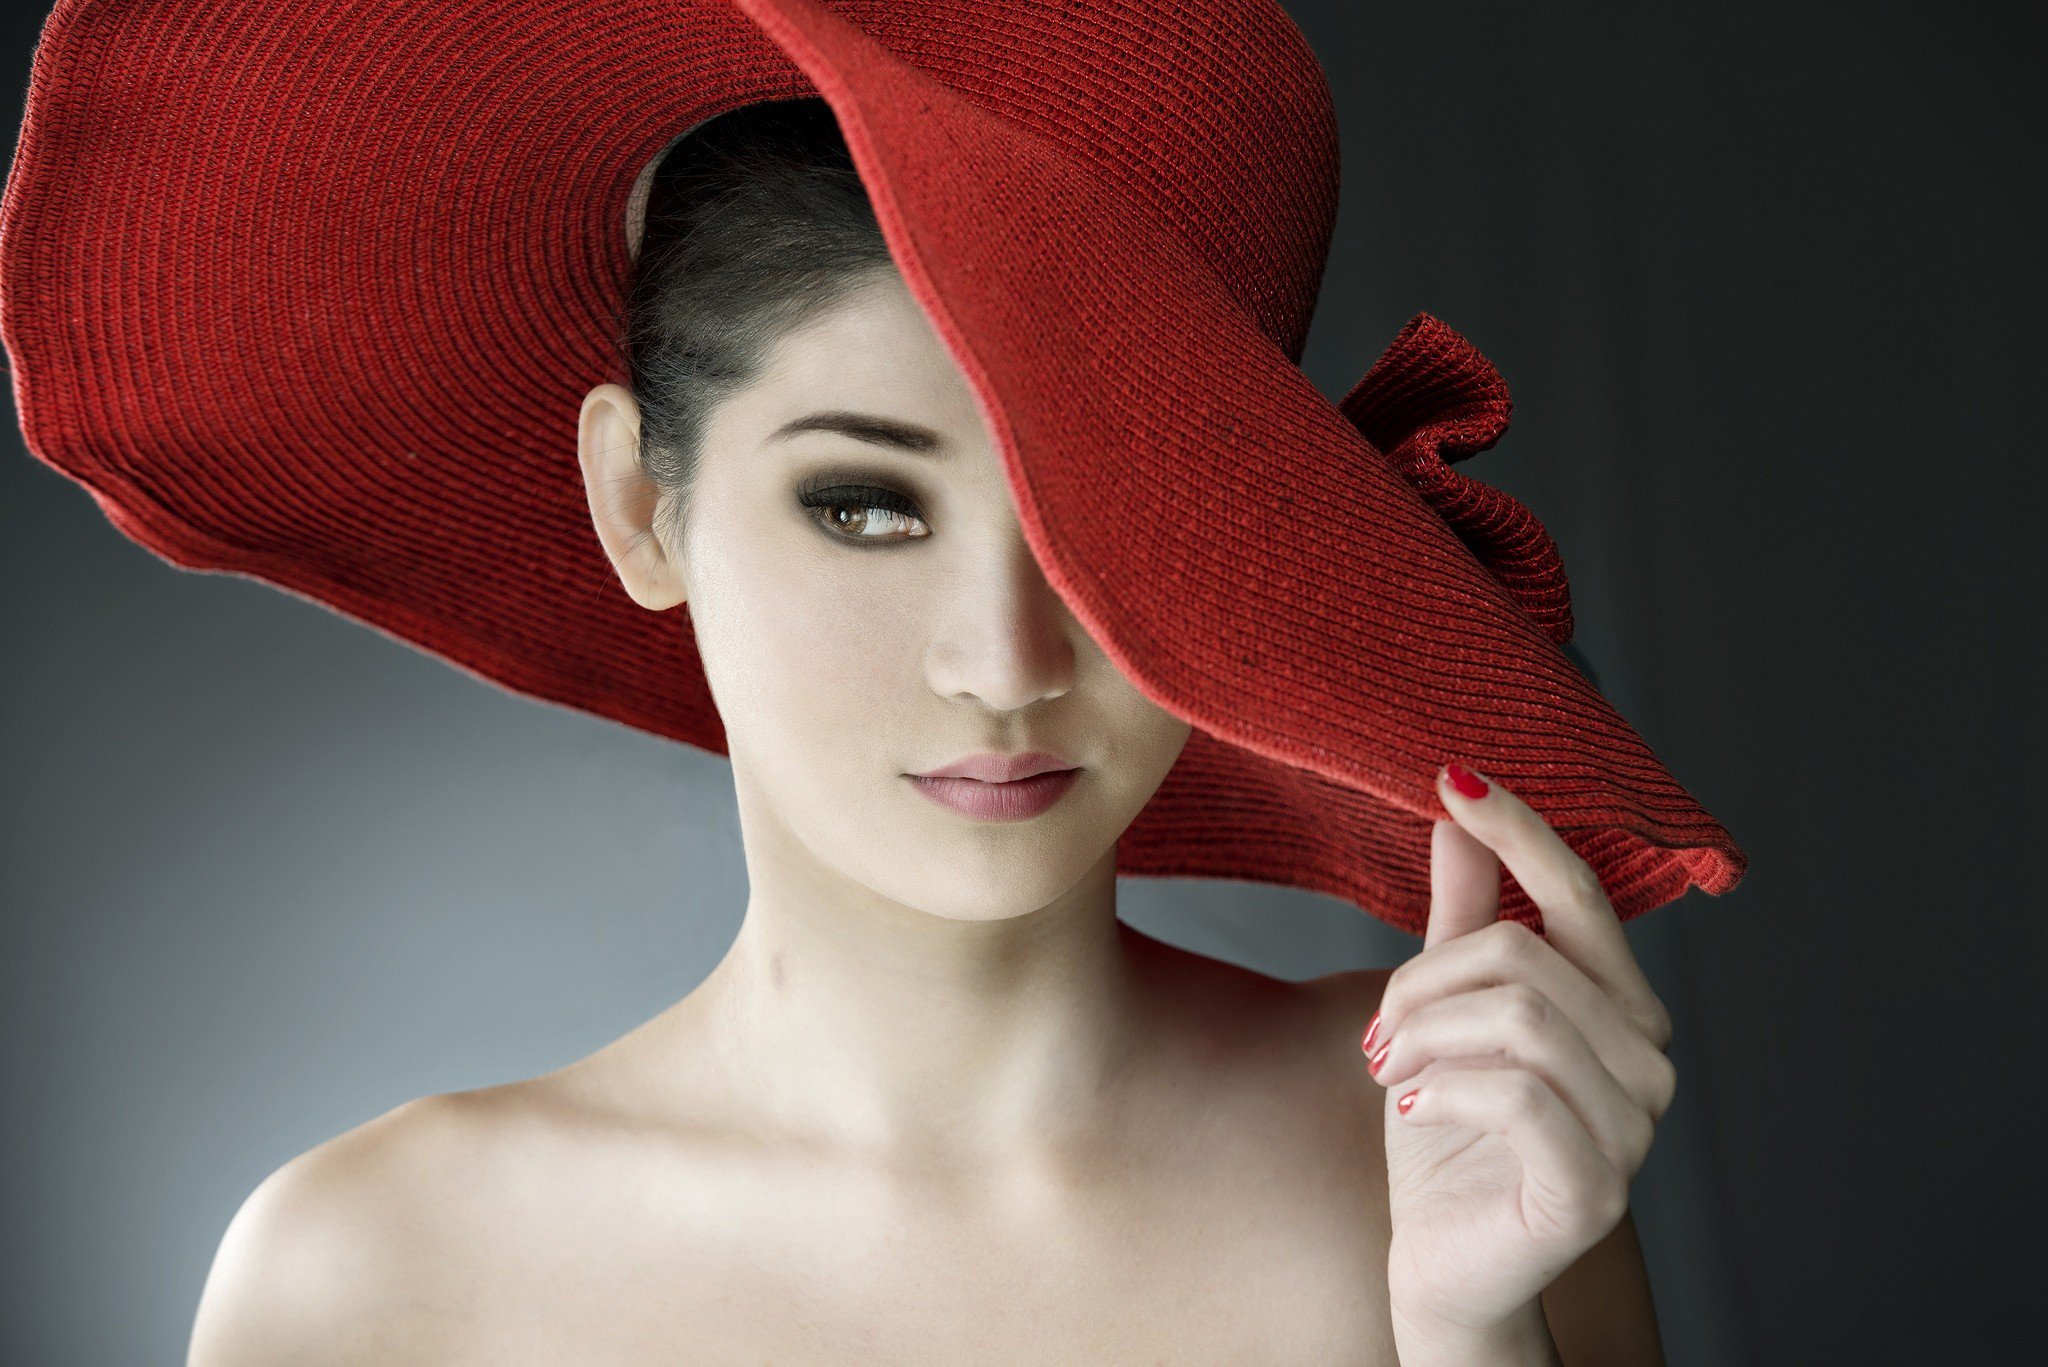 Слушать леди в красном. Женщина в шляпе. Девушка в красной шляпе. Красивая женщина в шляпе. Красивые девушки в шляпках.